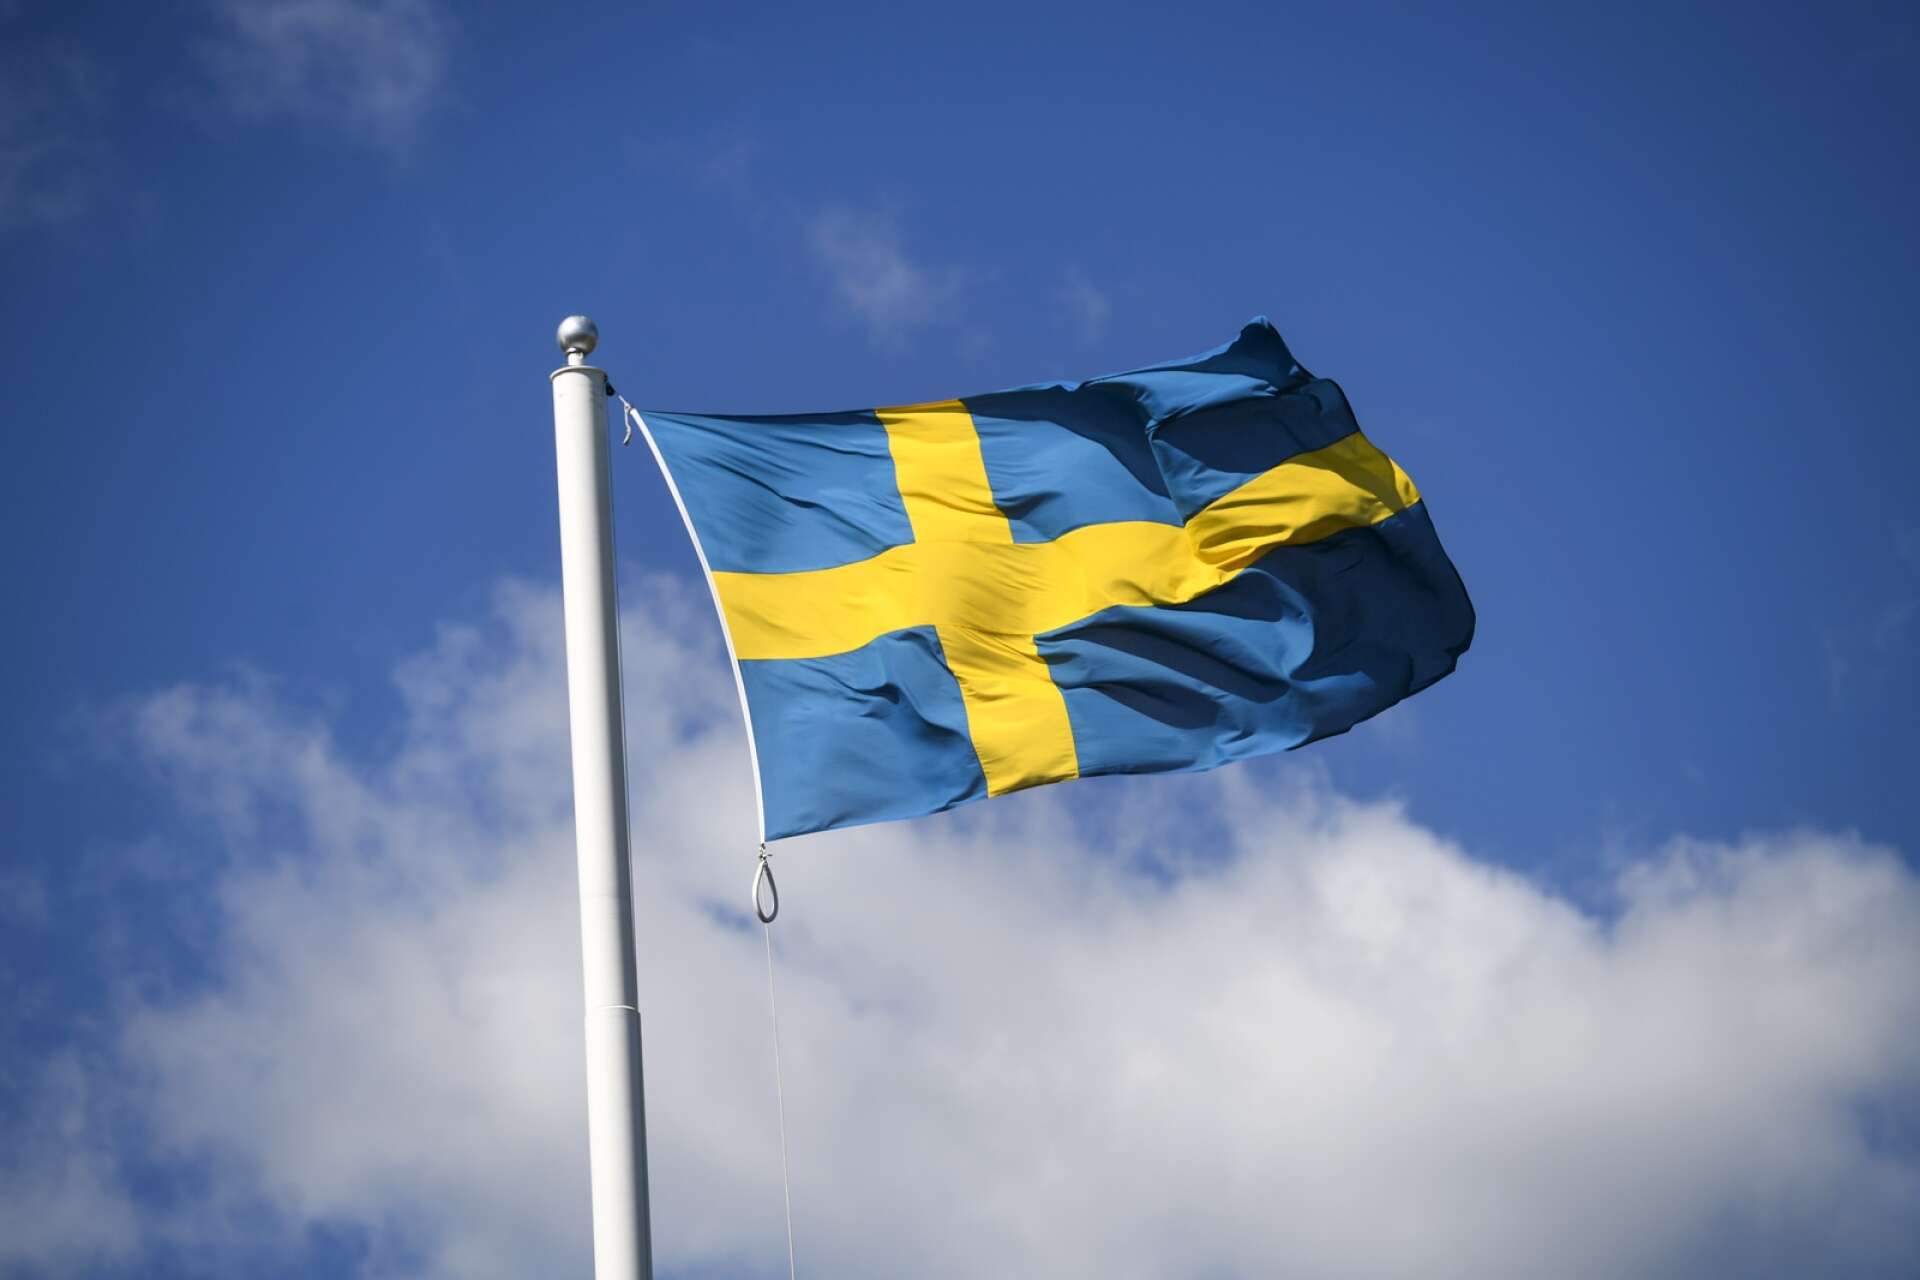 Men hur passande är egentligen Sverige som namn på vårt land, skriver Per Andersson.